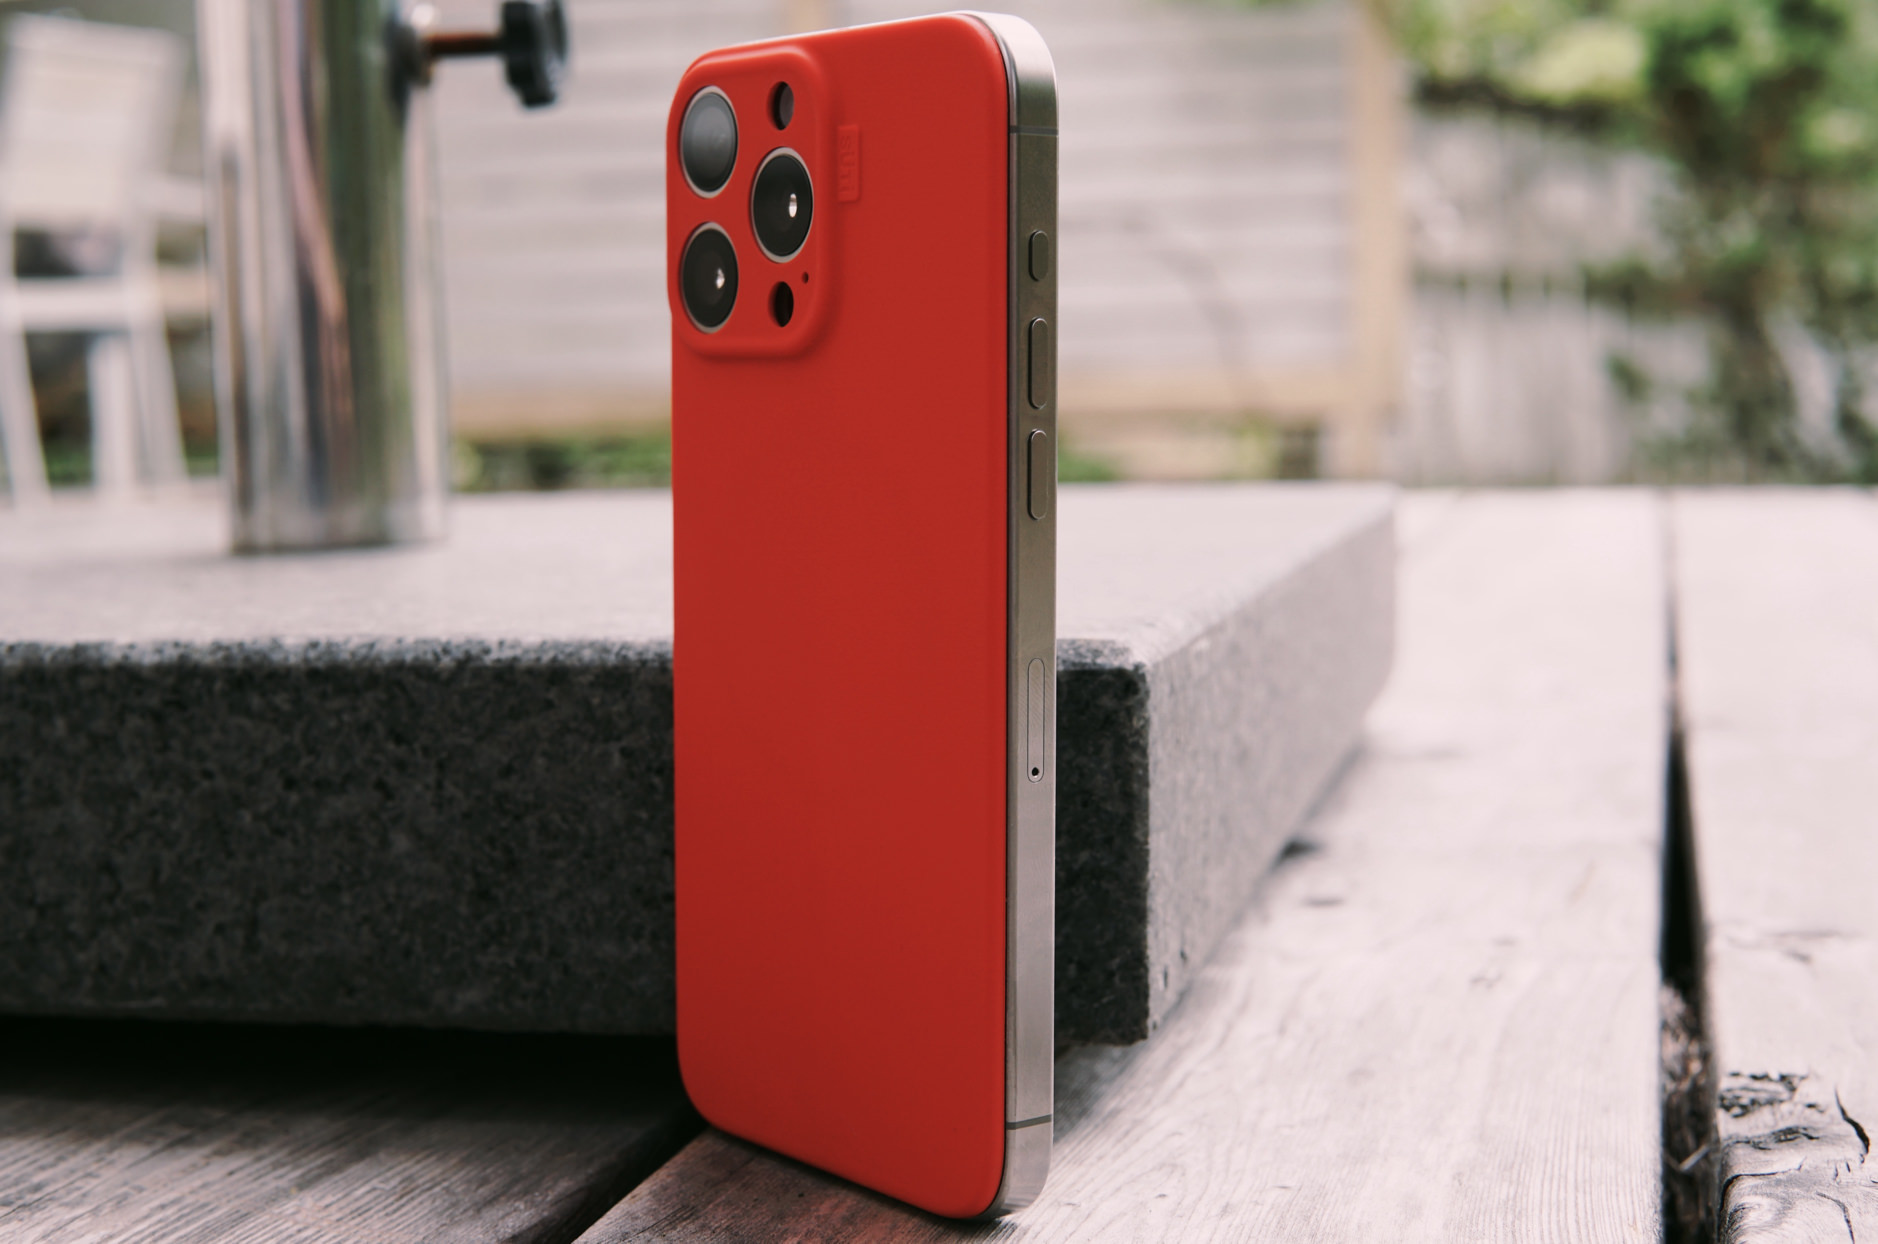 Bild zeigt das iPhone 15 Pro Max mit einer roten PhoneBack-Rückseite.